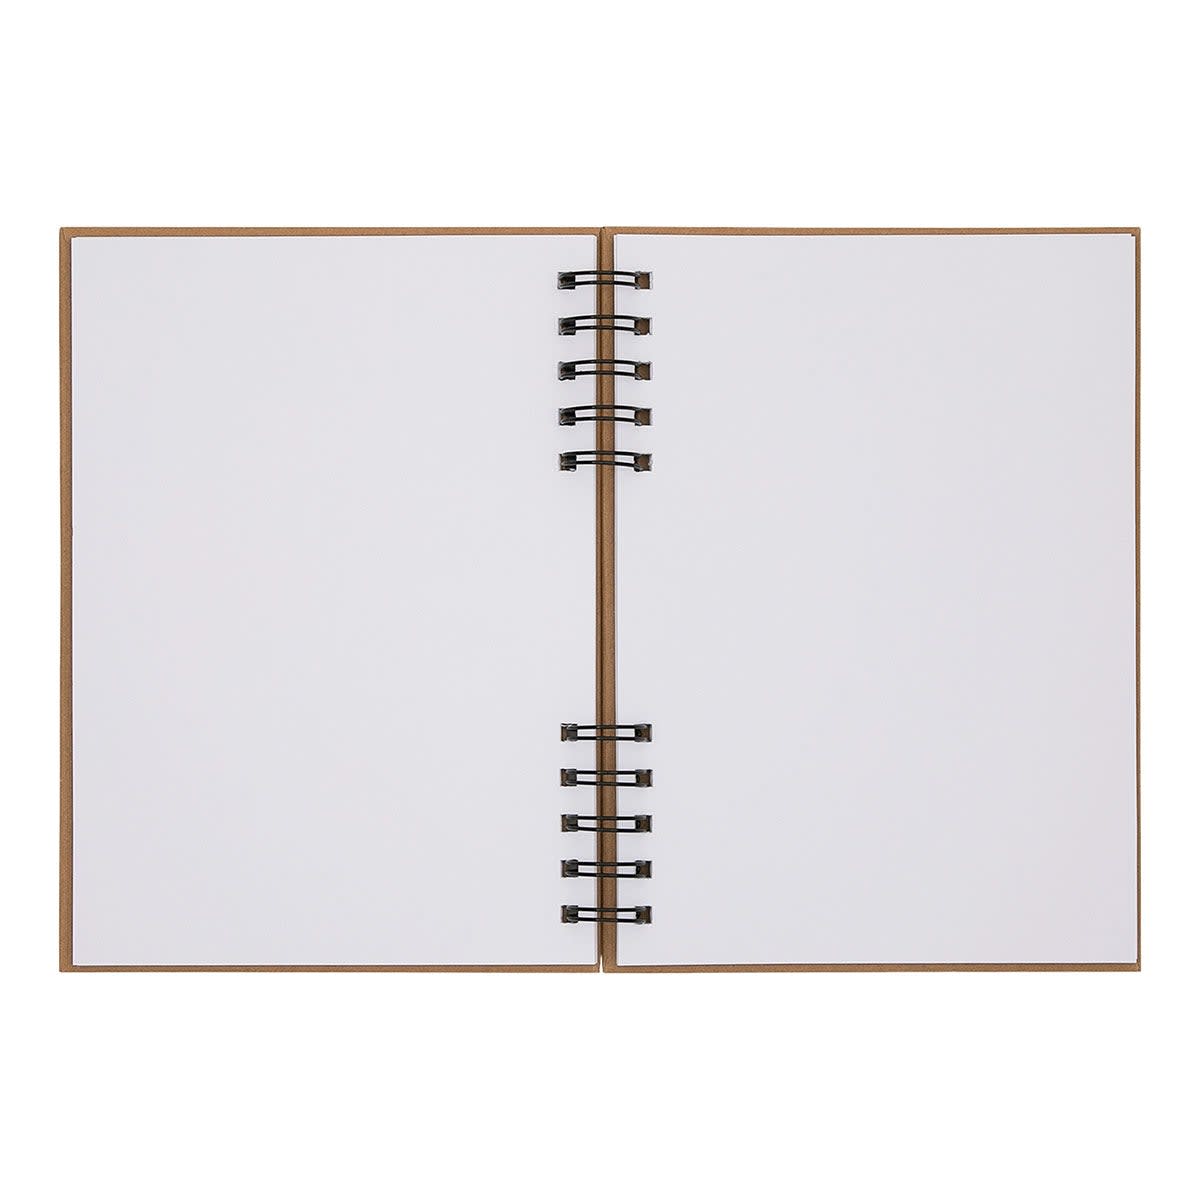 Carnet à dessin 80 pages blanches avec spirale 15x21cm SPIRALE